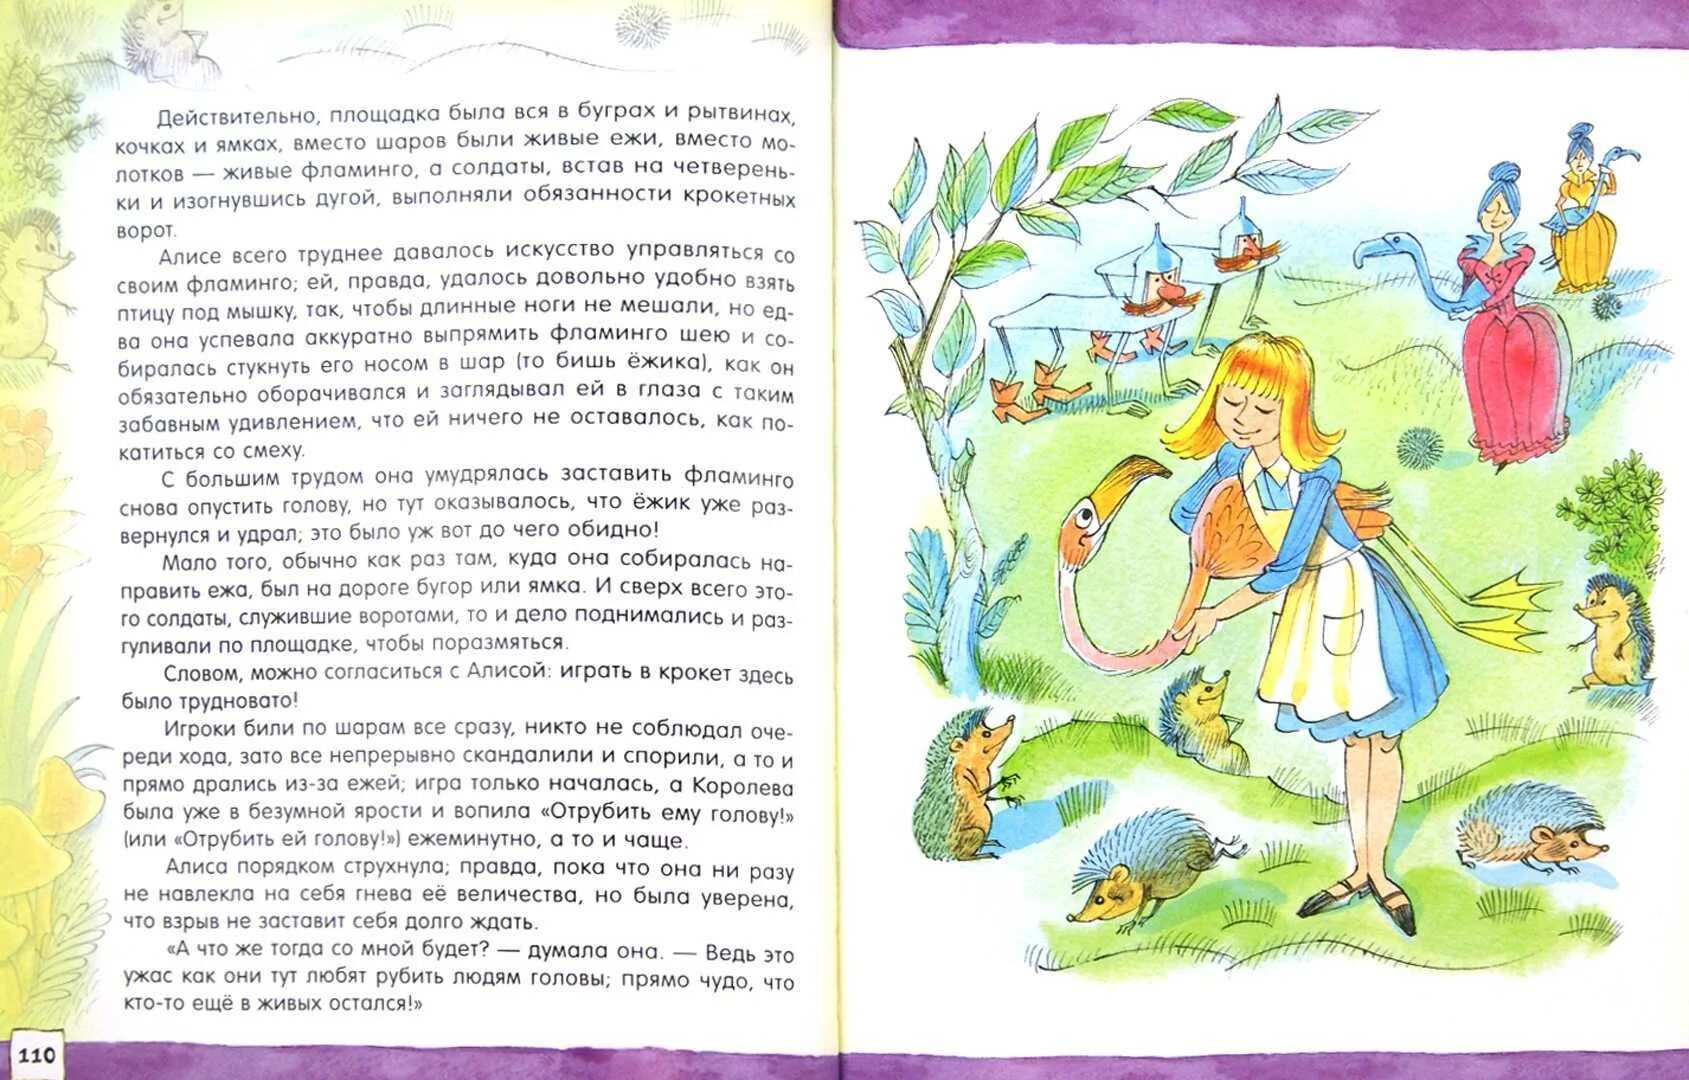 В стране чудес 1 глава краткий пересказ. Алиса в стране чудес Чижиков. Алиса в стране чудес Льюис Кэрролл книга читательский дневник. Чижиков иллюстрации Алиса в стране чудес.